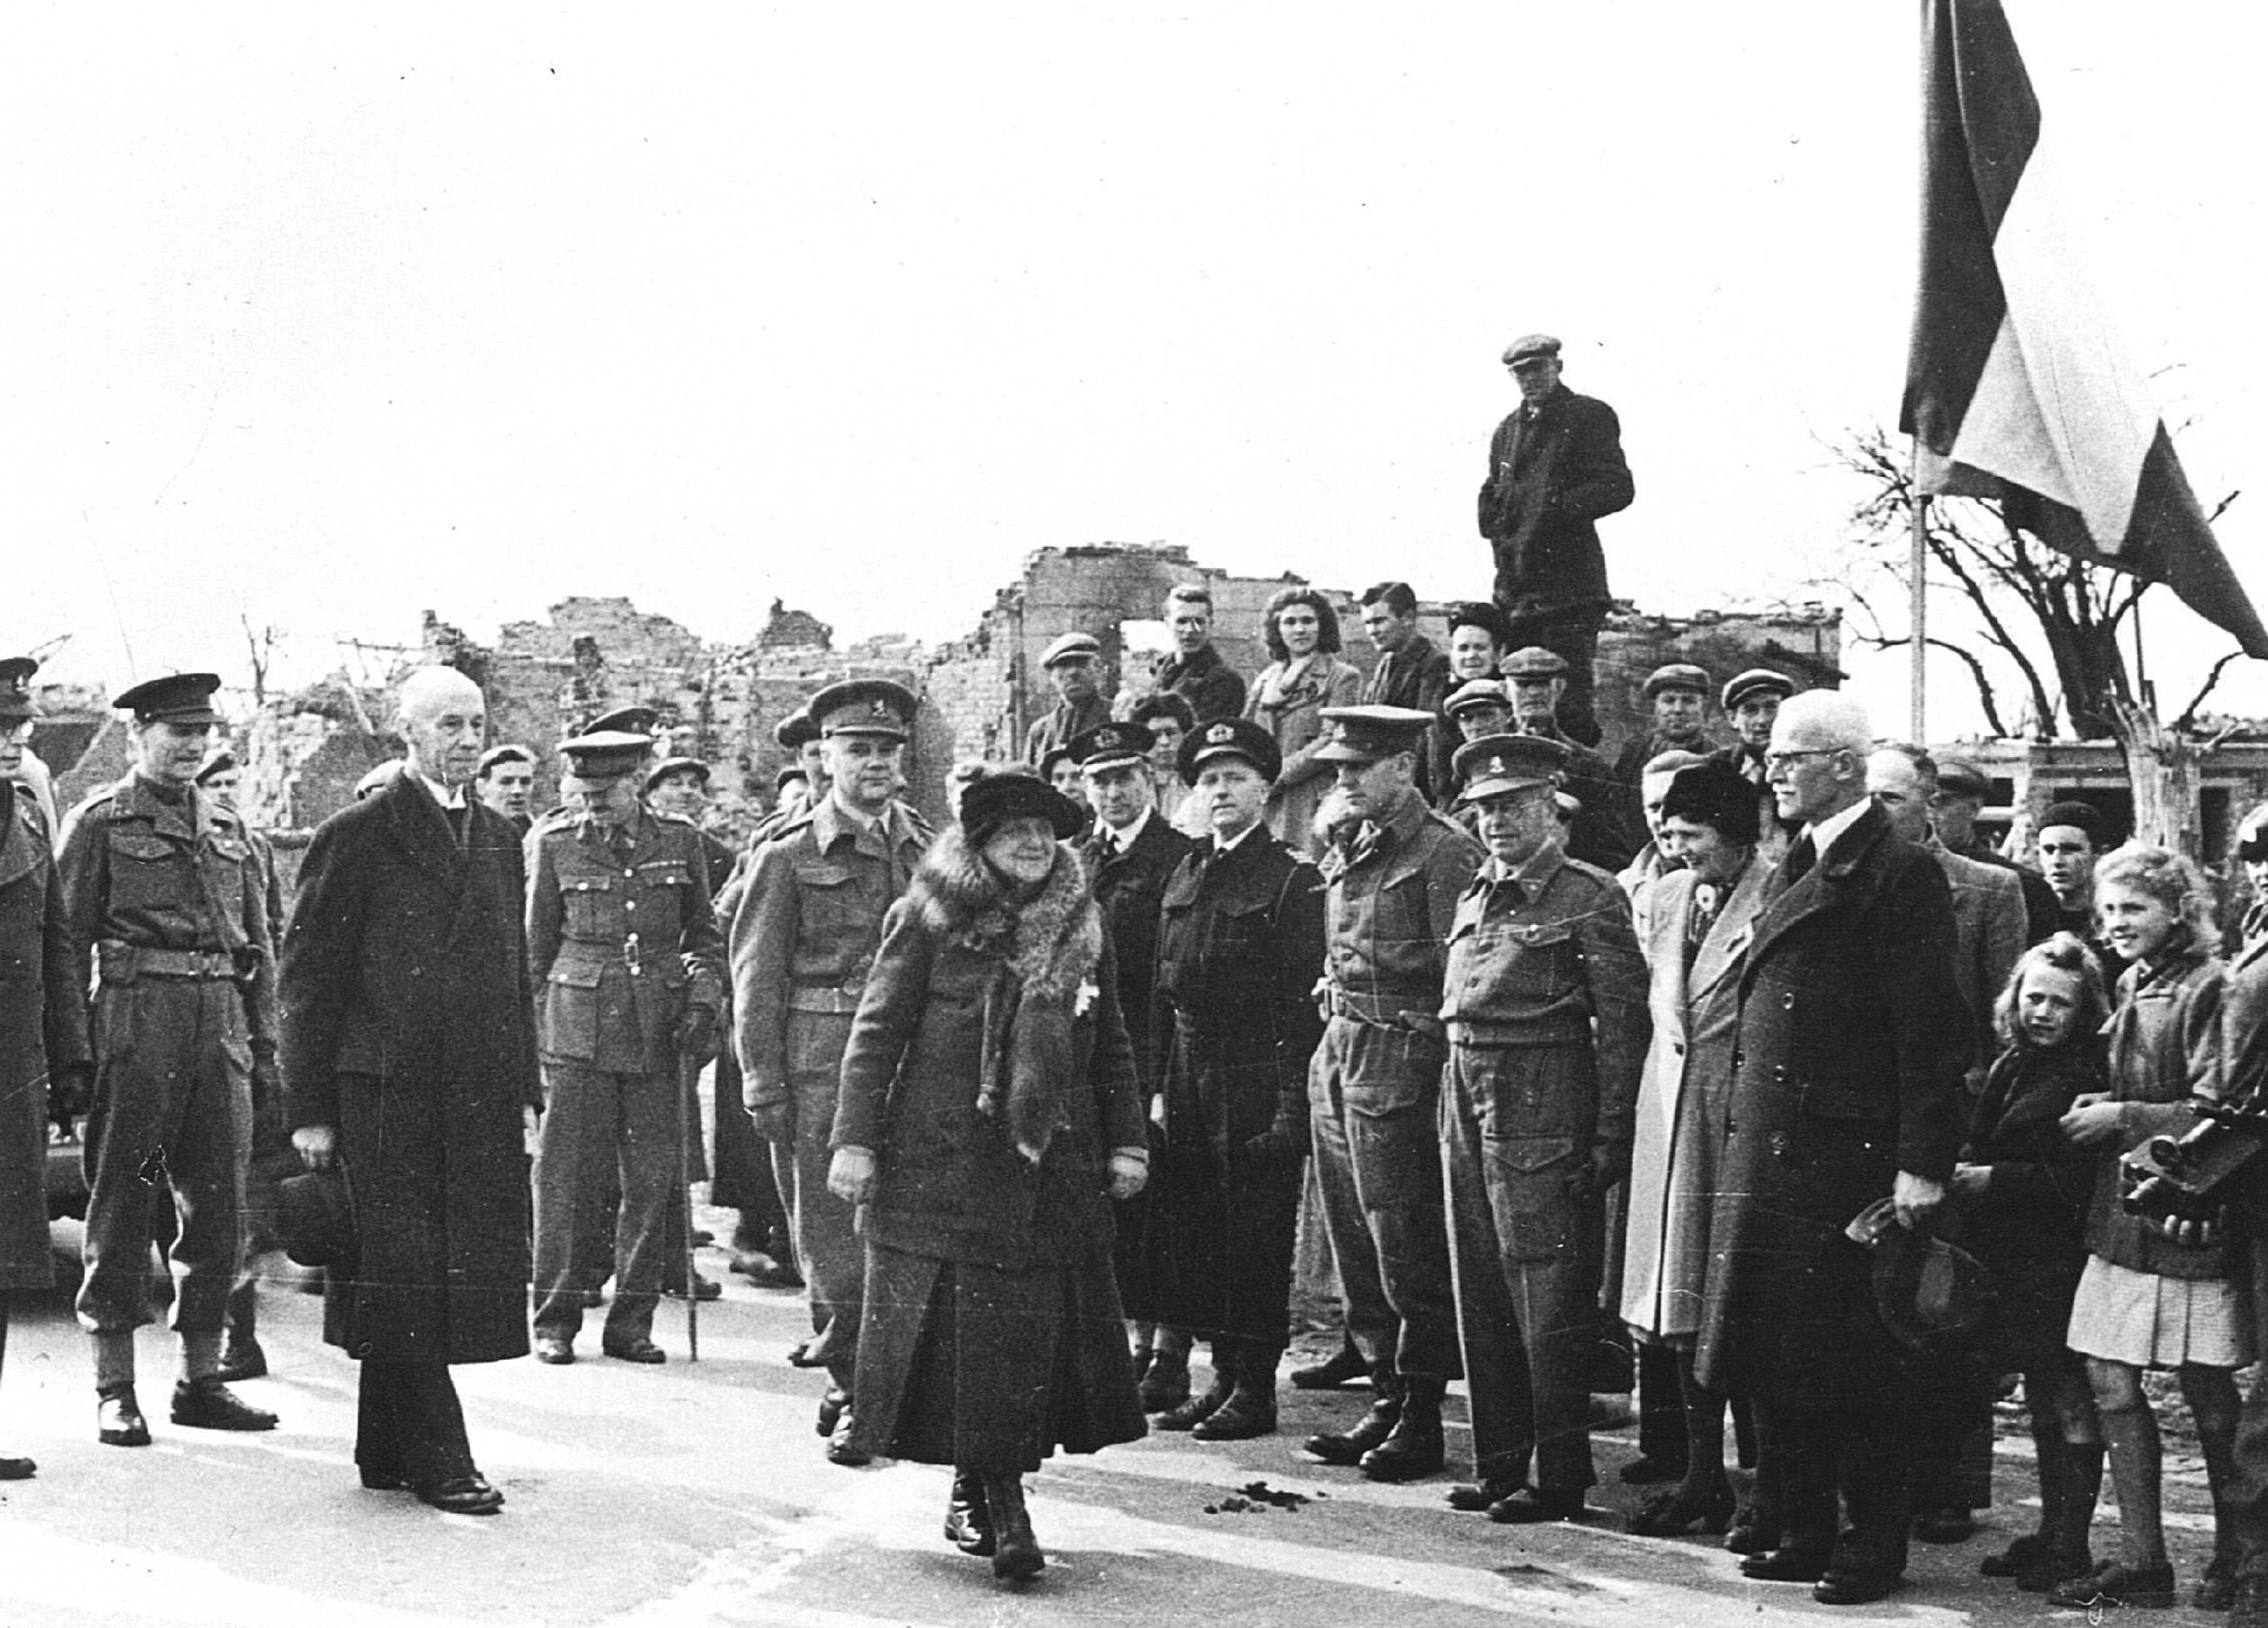 Koningin Wilhelmina stapt over de symbolische landsgrens in Eede, 13 maart 1945.